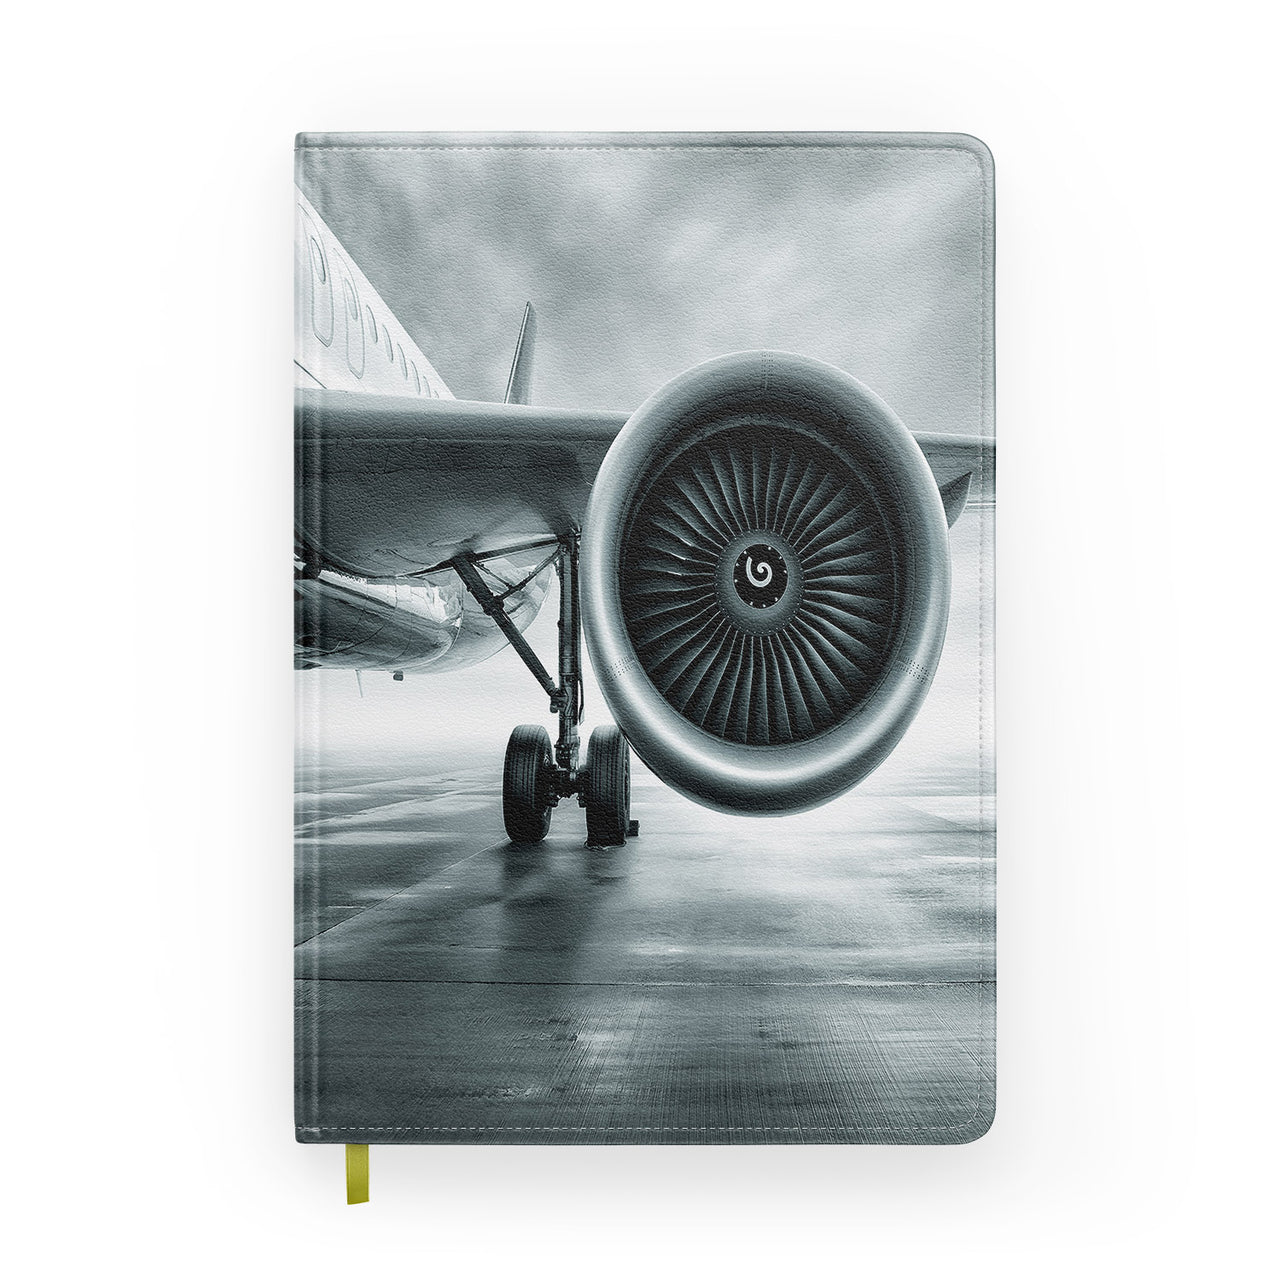 Super Cool Airliner Jet Engine Designed Notebooks